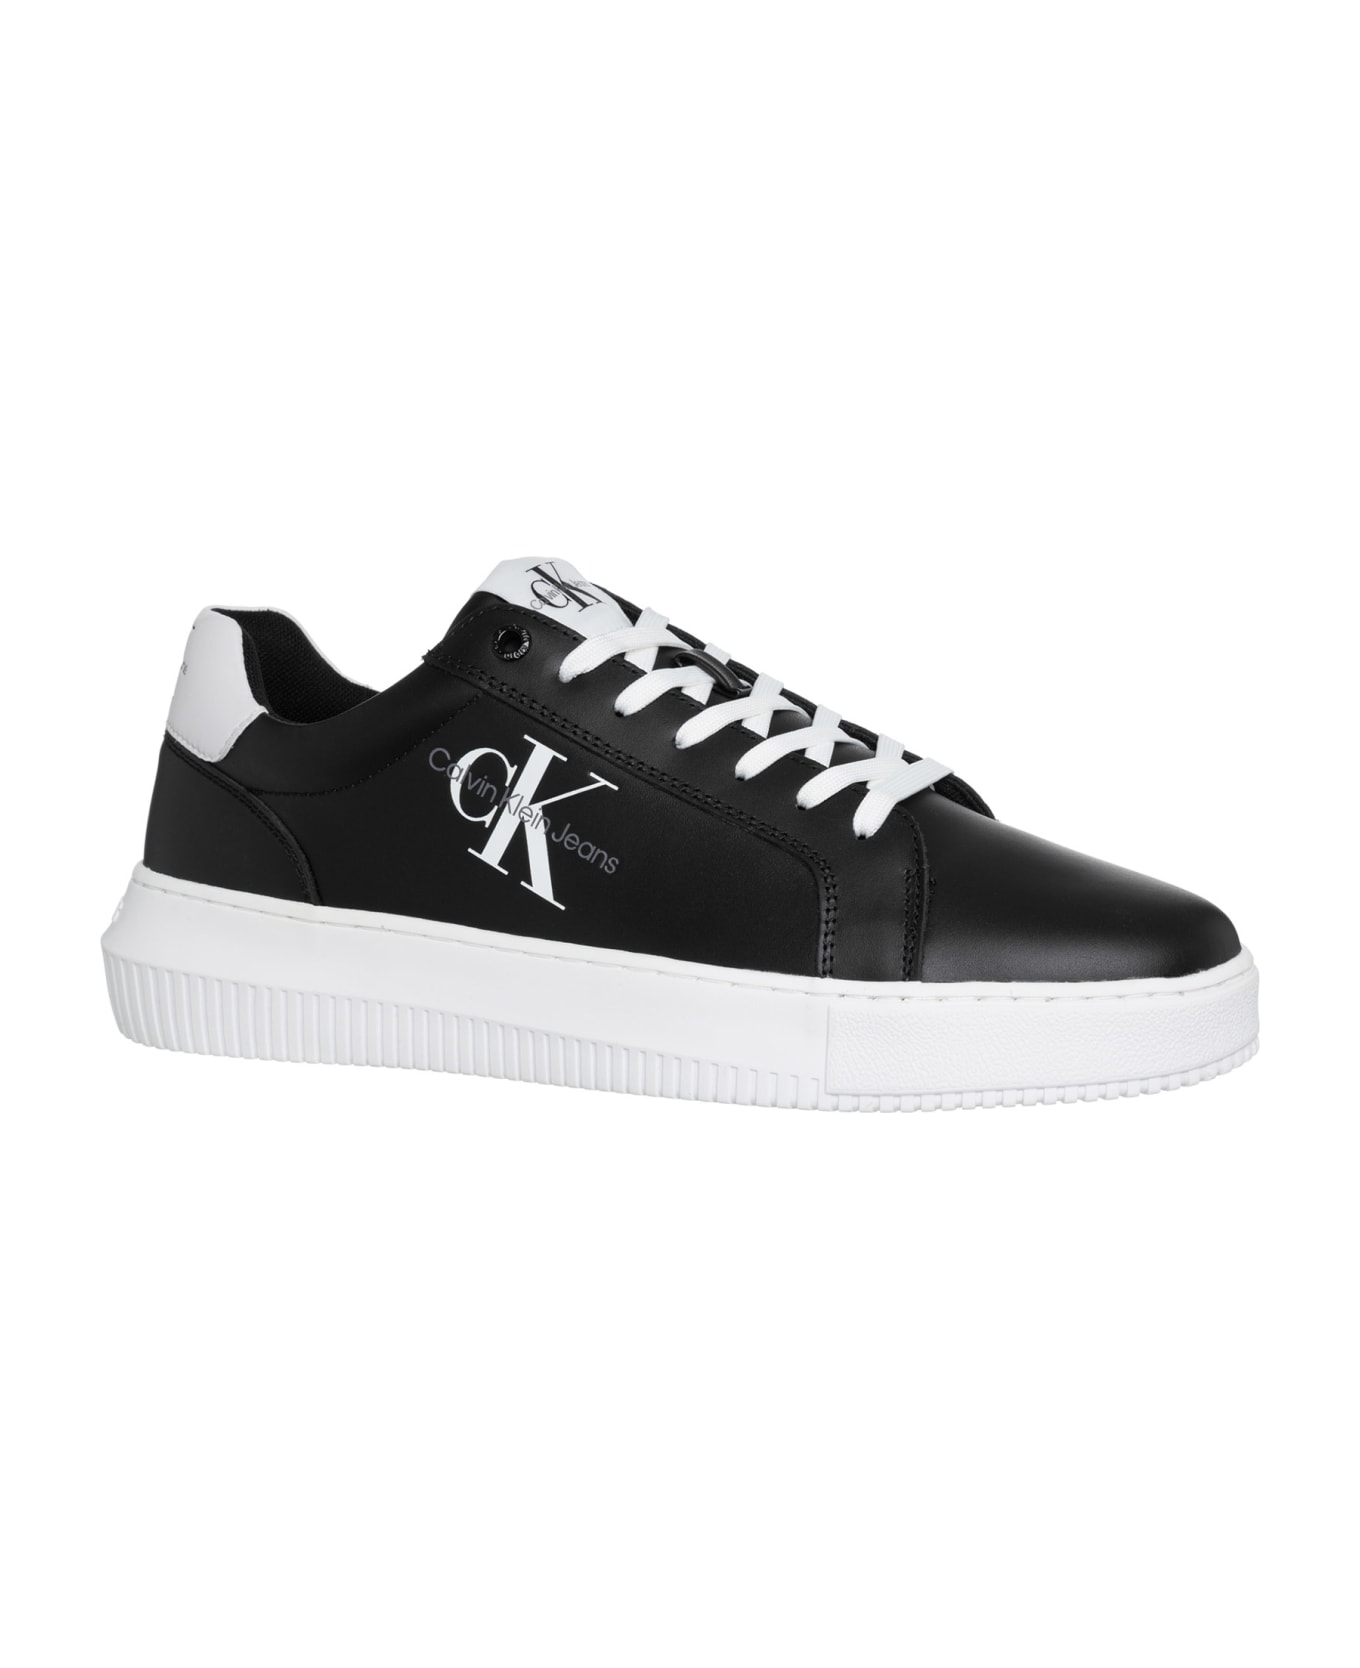 Calvin Klein Leather Sneakers - Black/white